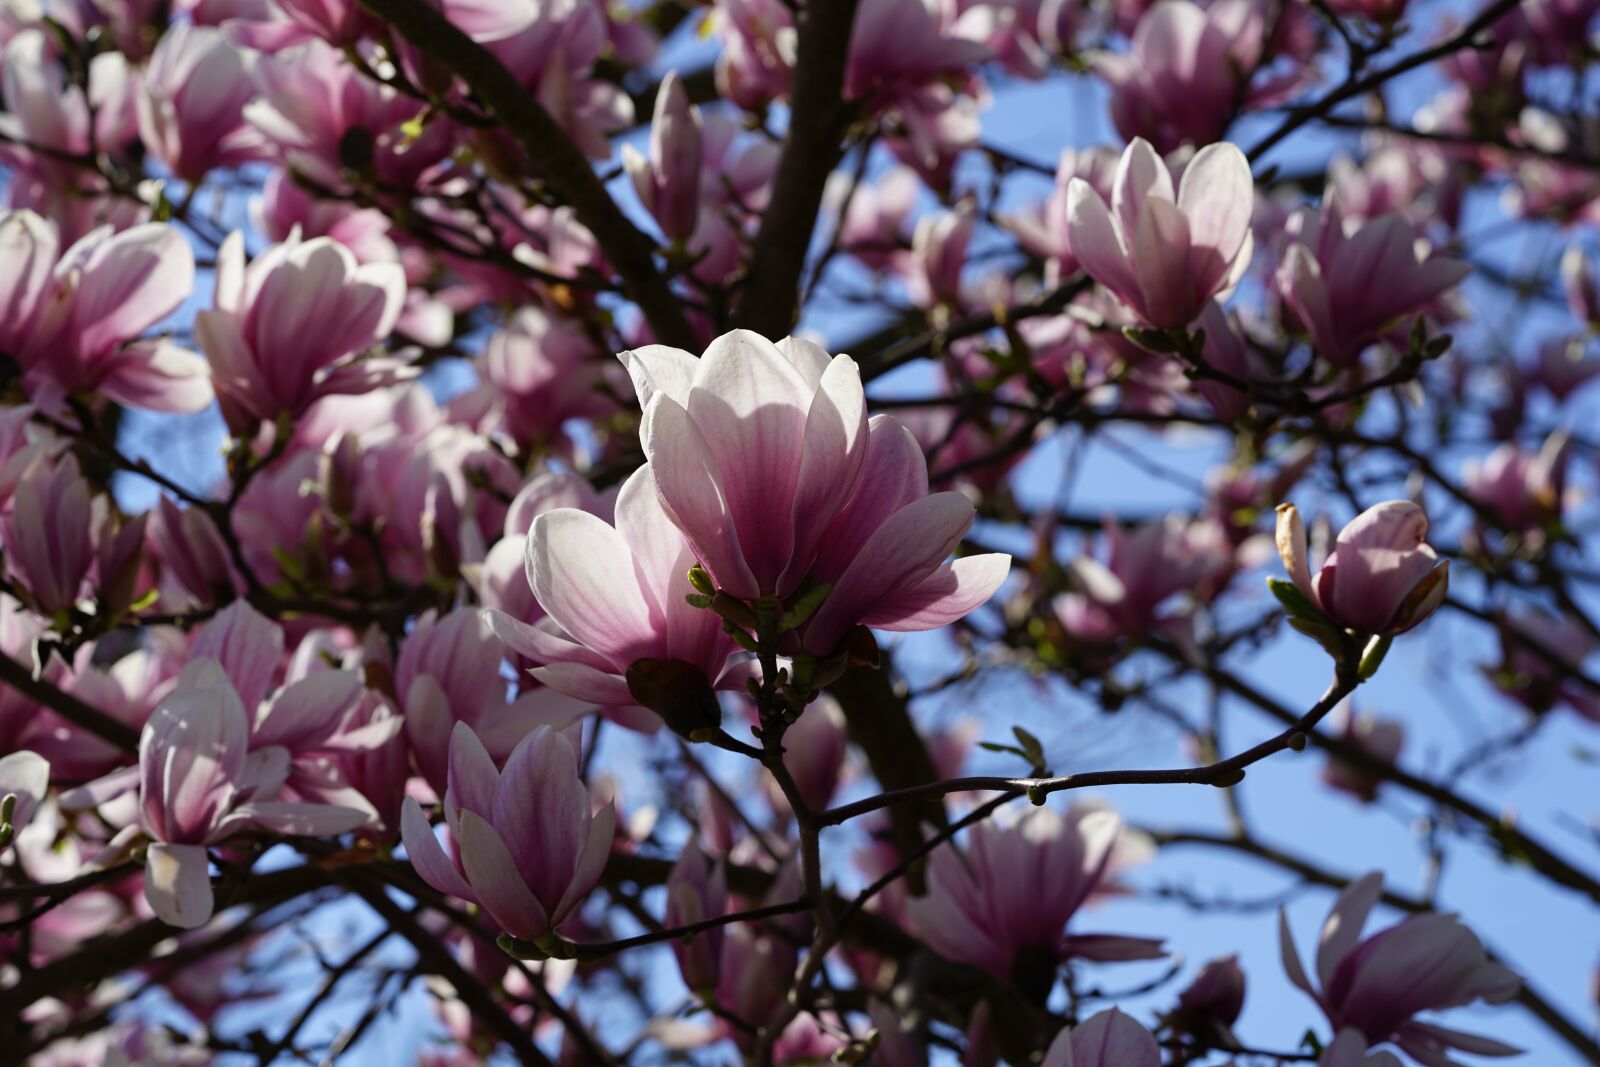 Sony a7R II sample photo. Tulip magnolia, magnolia, magnolia photography